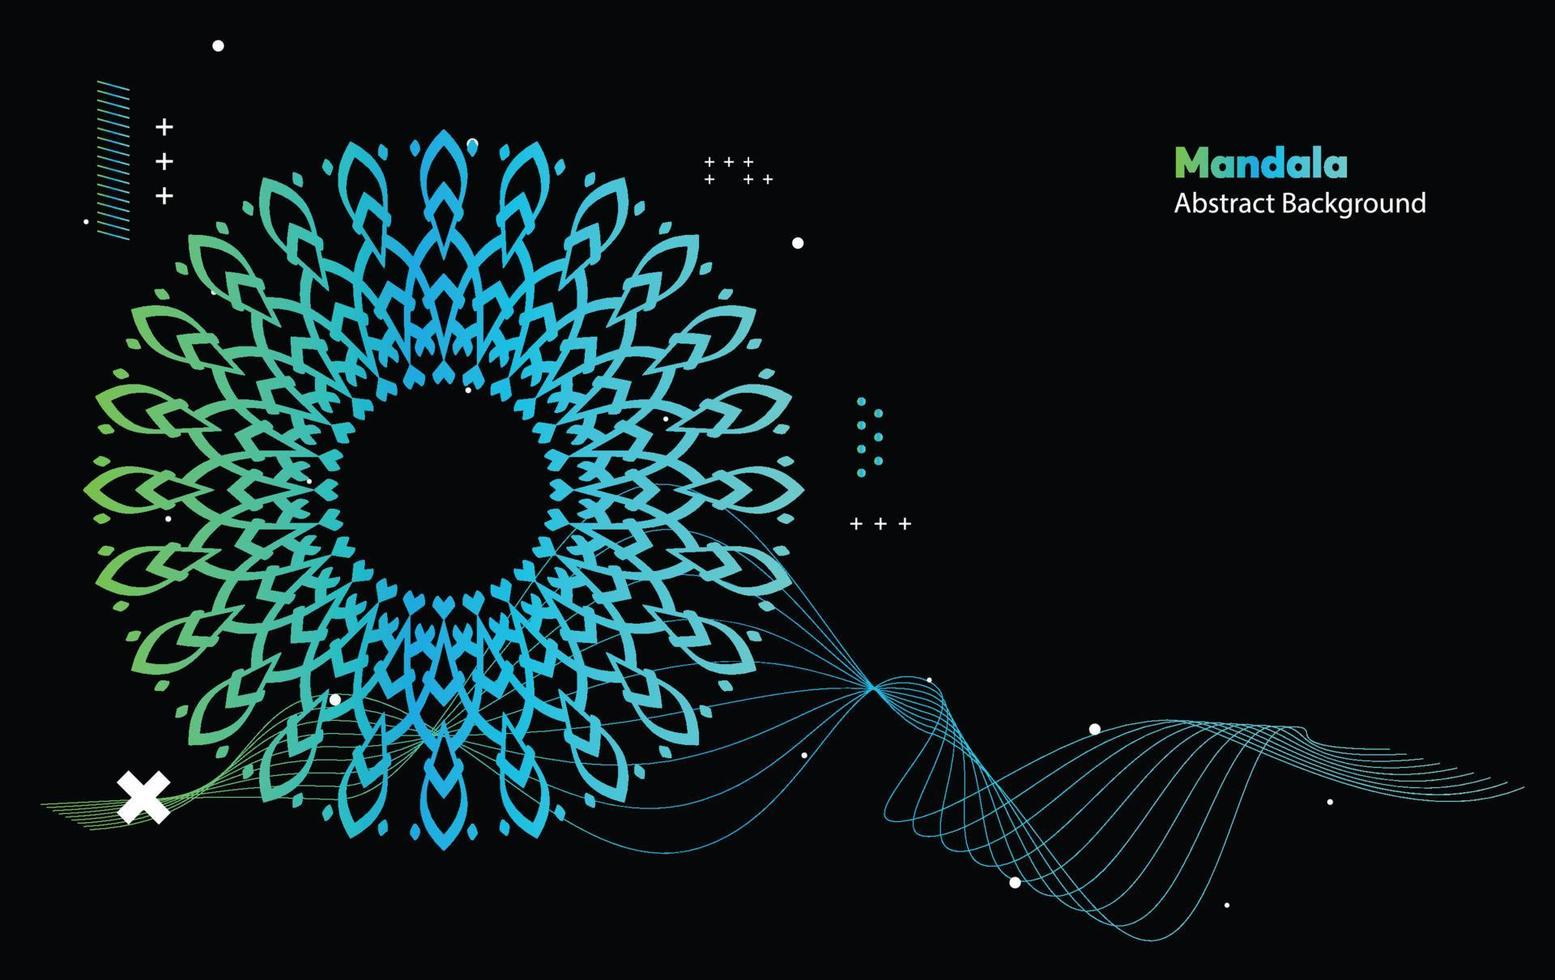 mandala kleurrijke donkere ogen futuristische kunst, moderne schildertextuur met meerdere wiskundige vormen vector